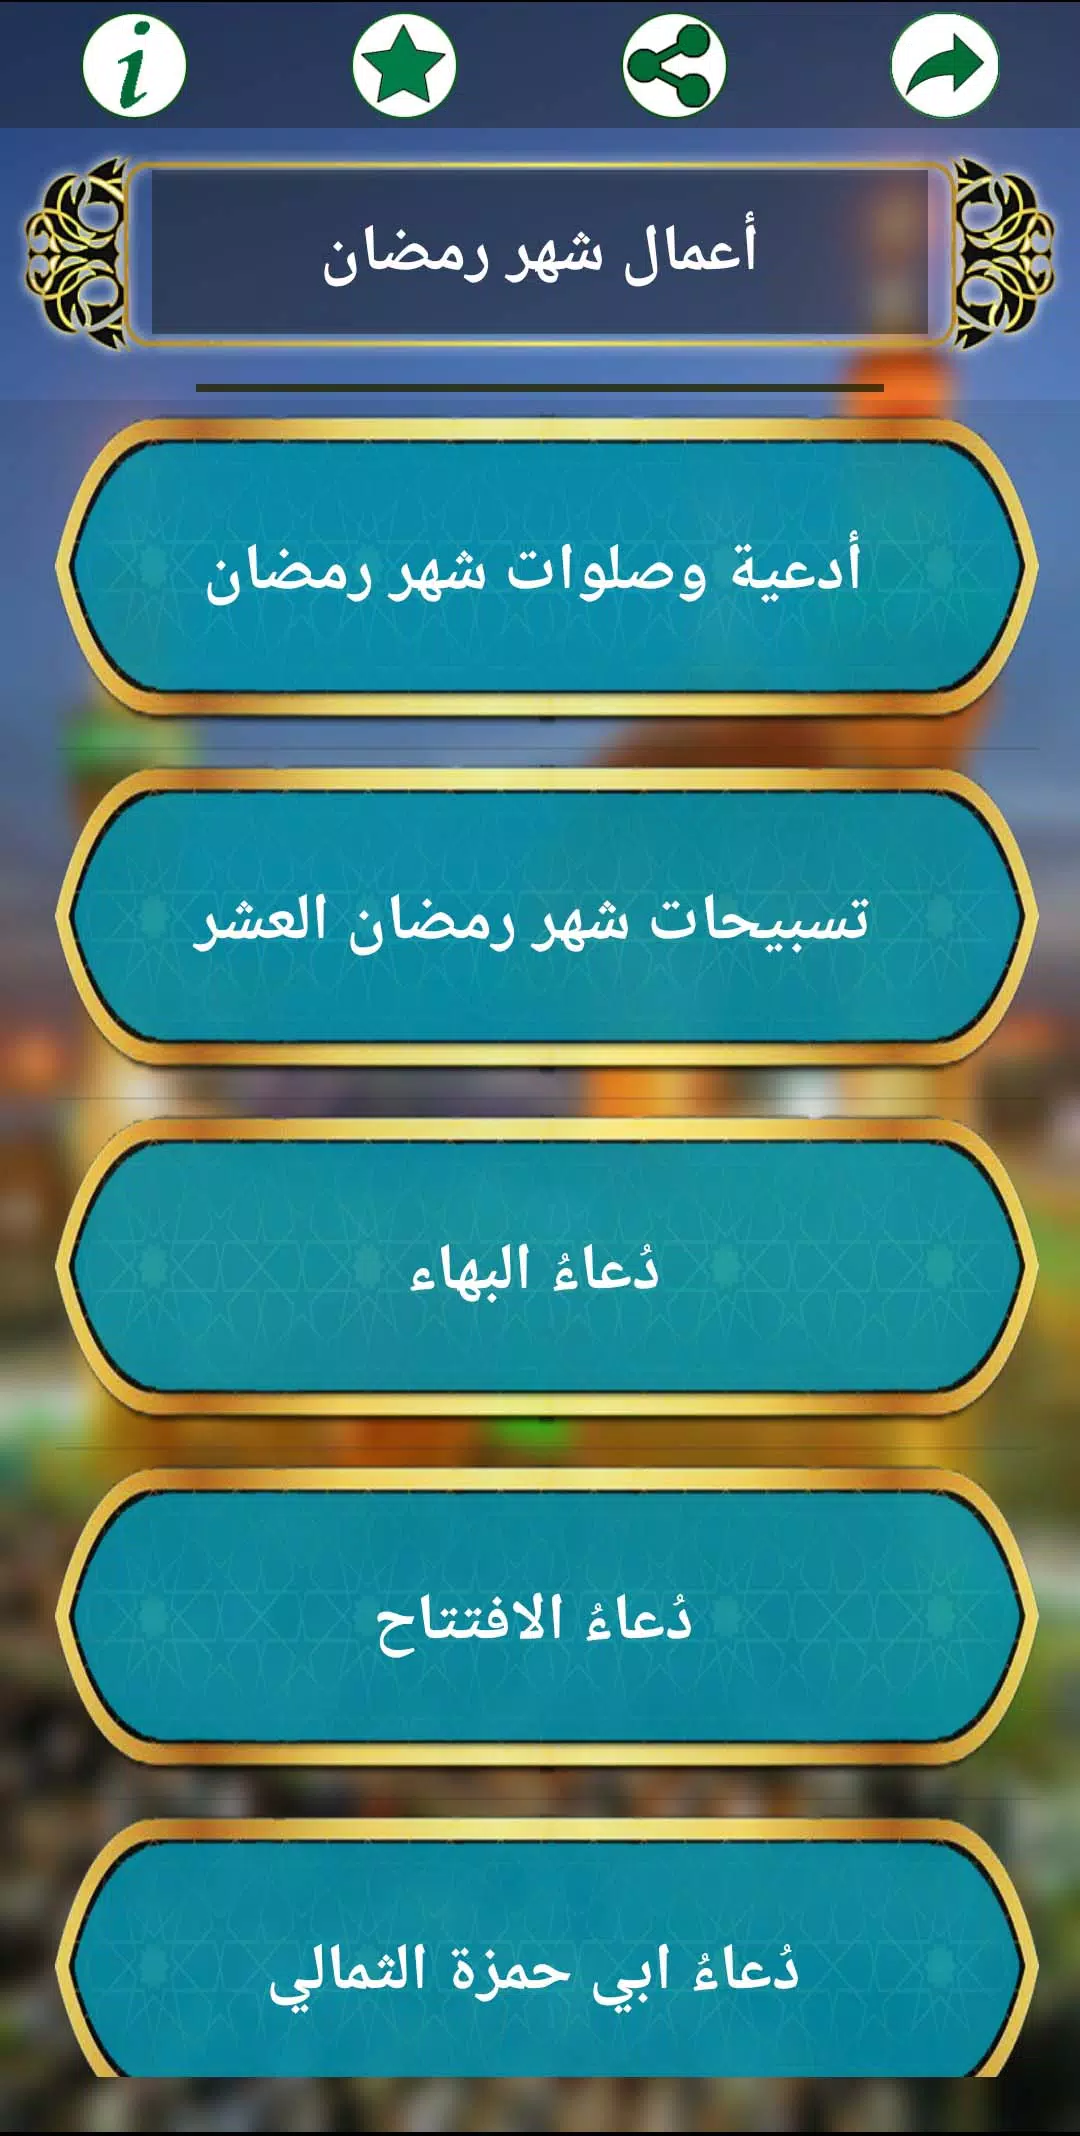 حقيبة المؤمن الشيعي for Android - APK Download